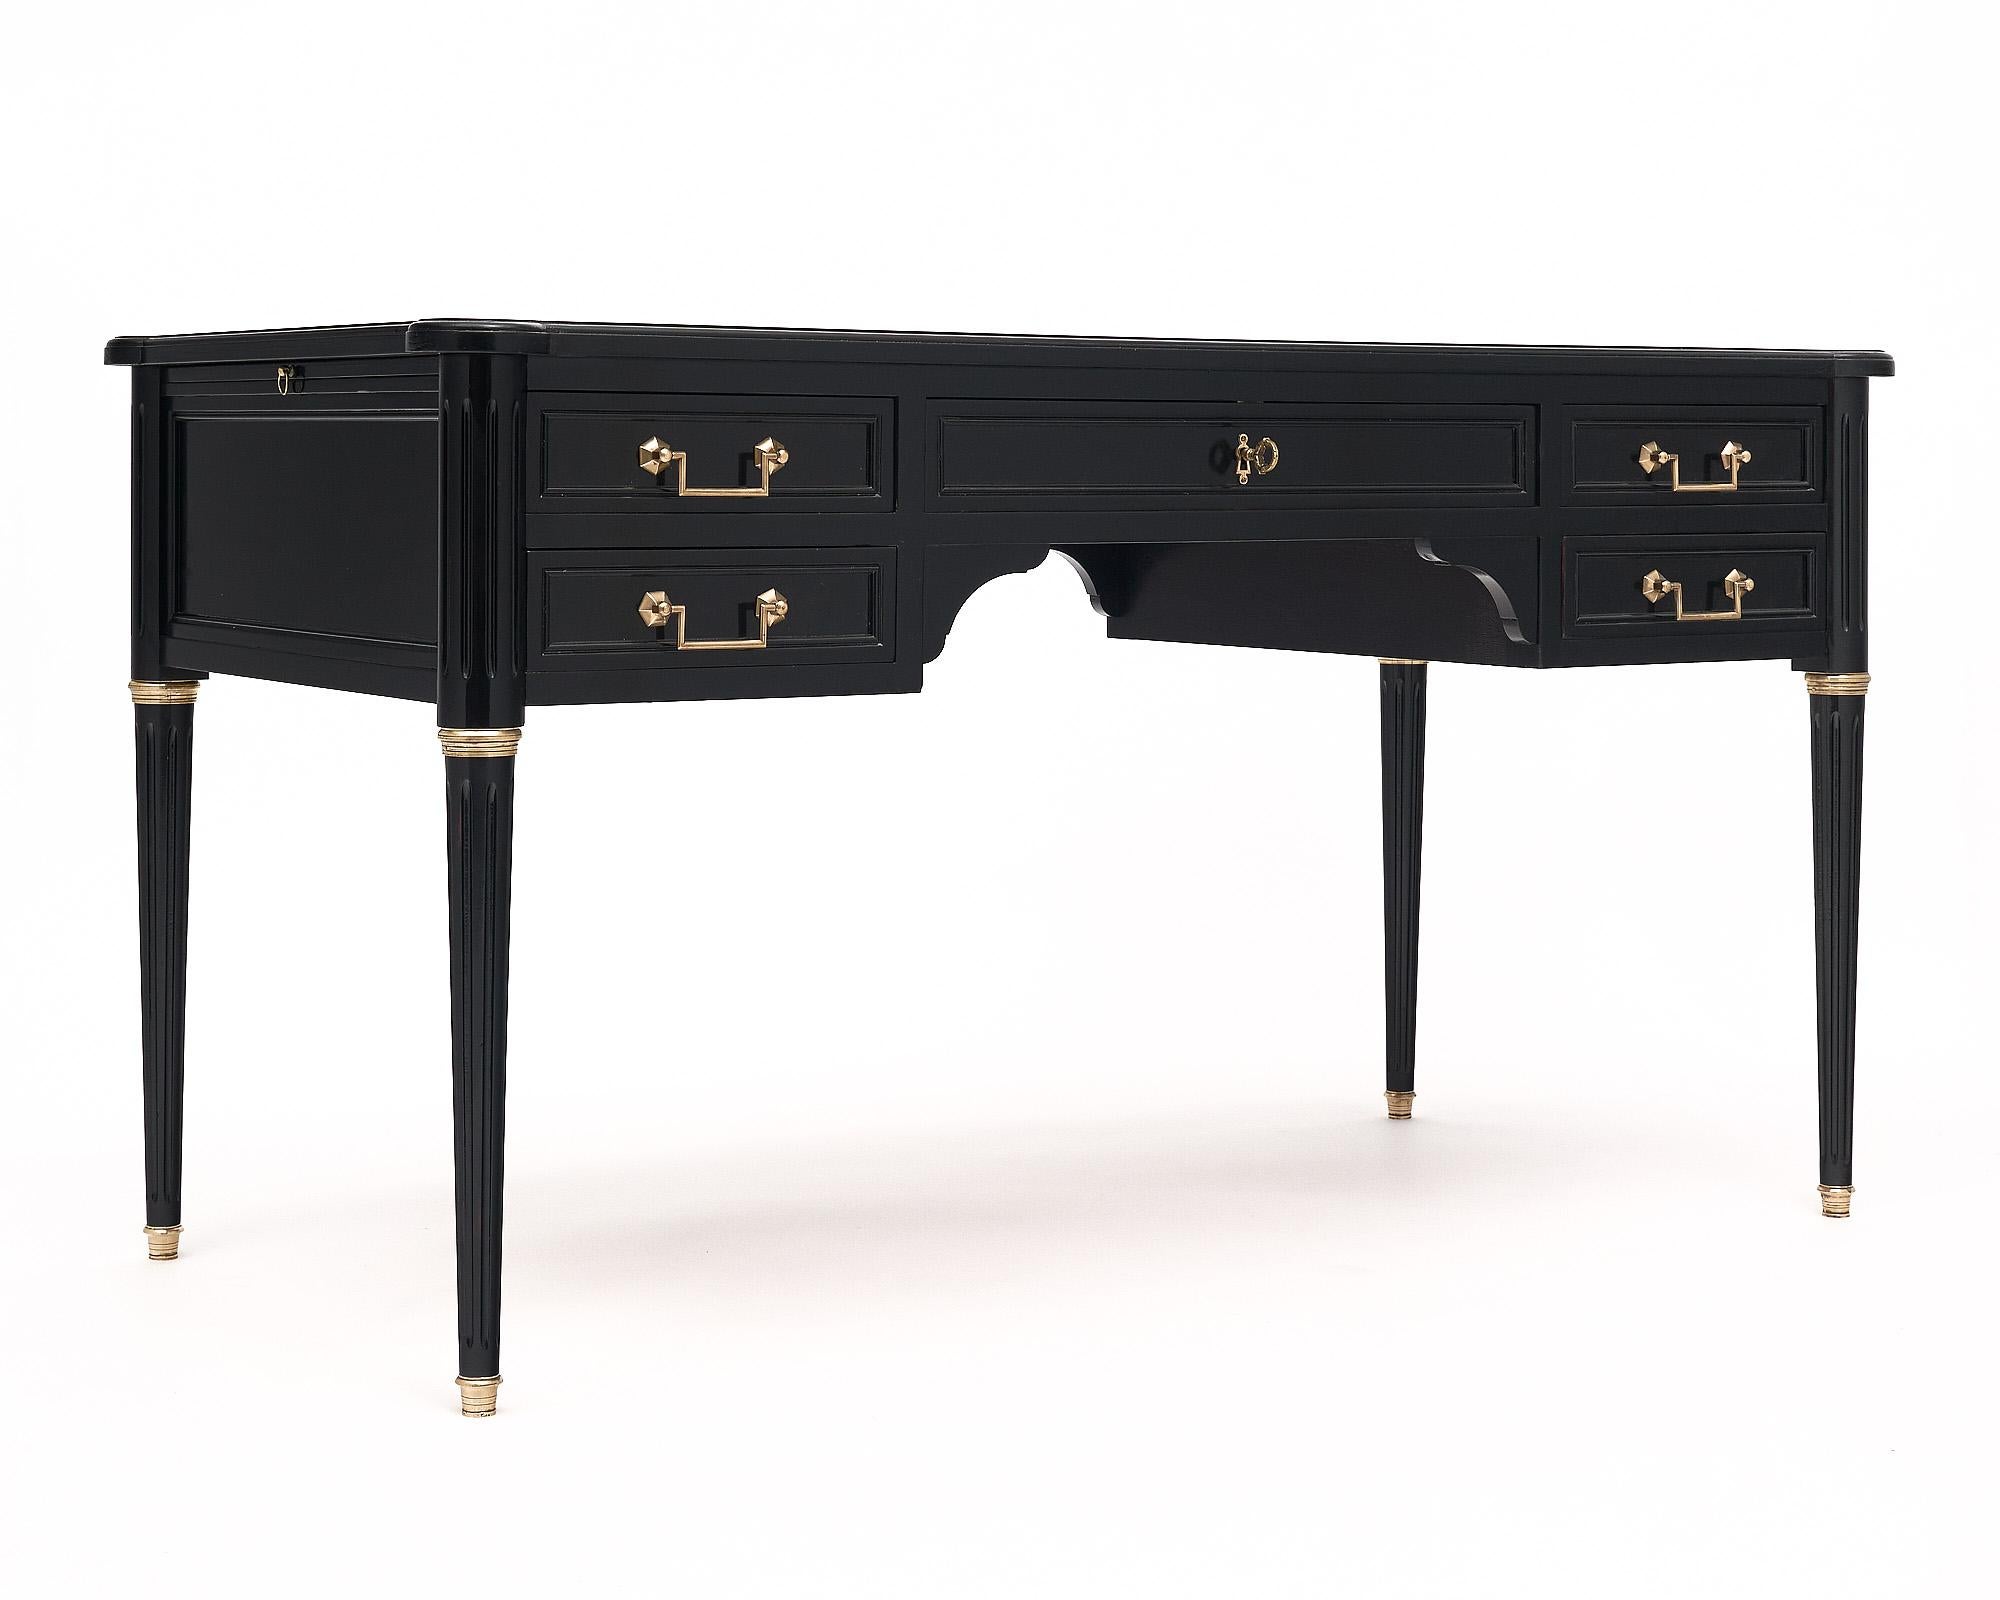 Schreibtisch aus Frankreich im Stil Louis XVI. Dieses Stück wurde ebonisiert und mit einer glänzenden französischen Politur versehen. Es gibt fünf schwalbenschwanzförmige Schubladen, alle mit originalen Messingbeschlägen. Die mittlere Schublade hat